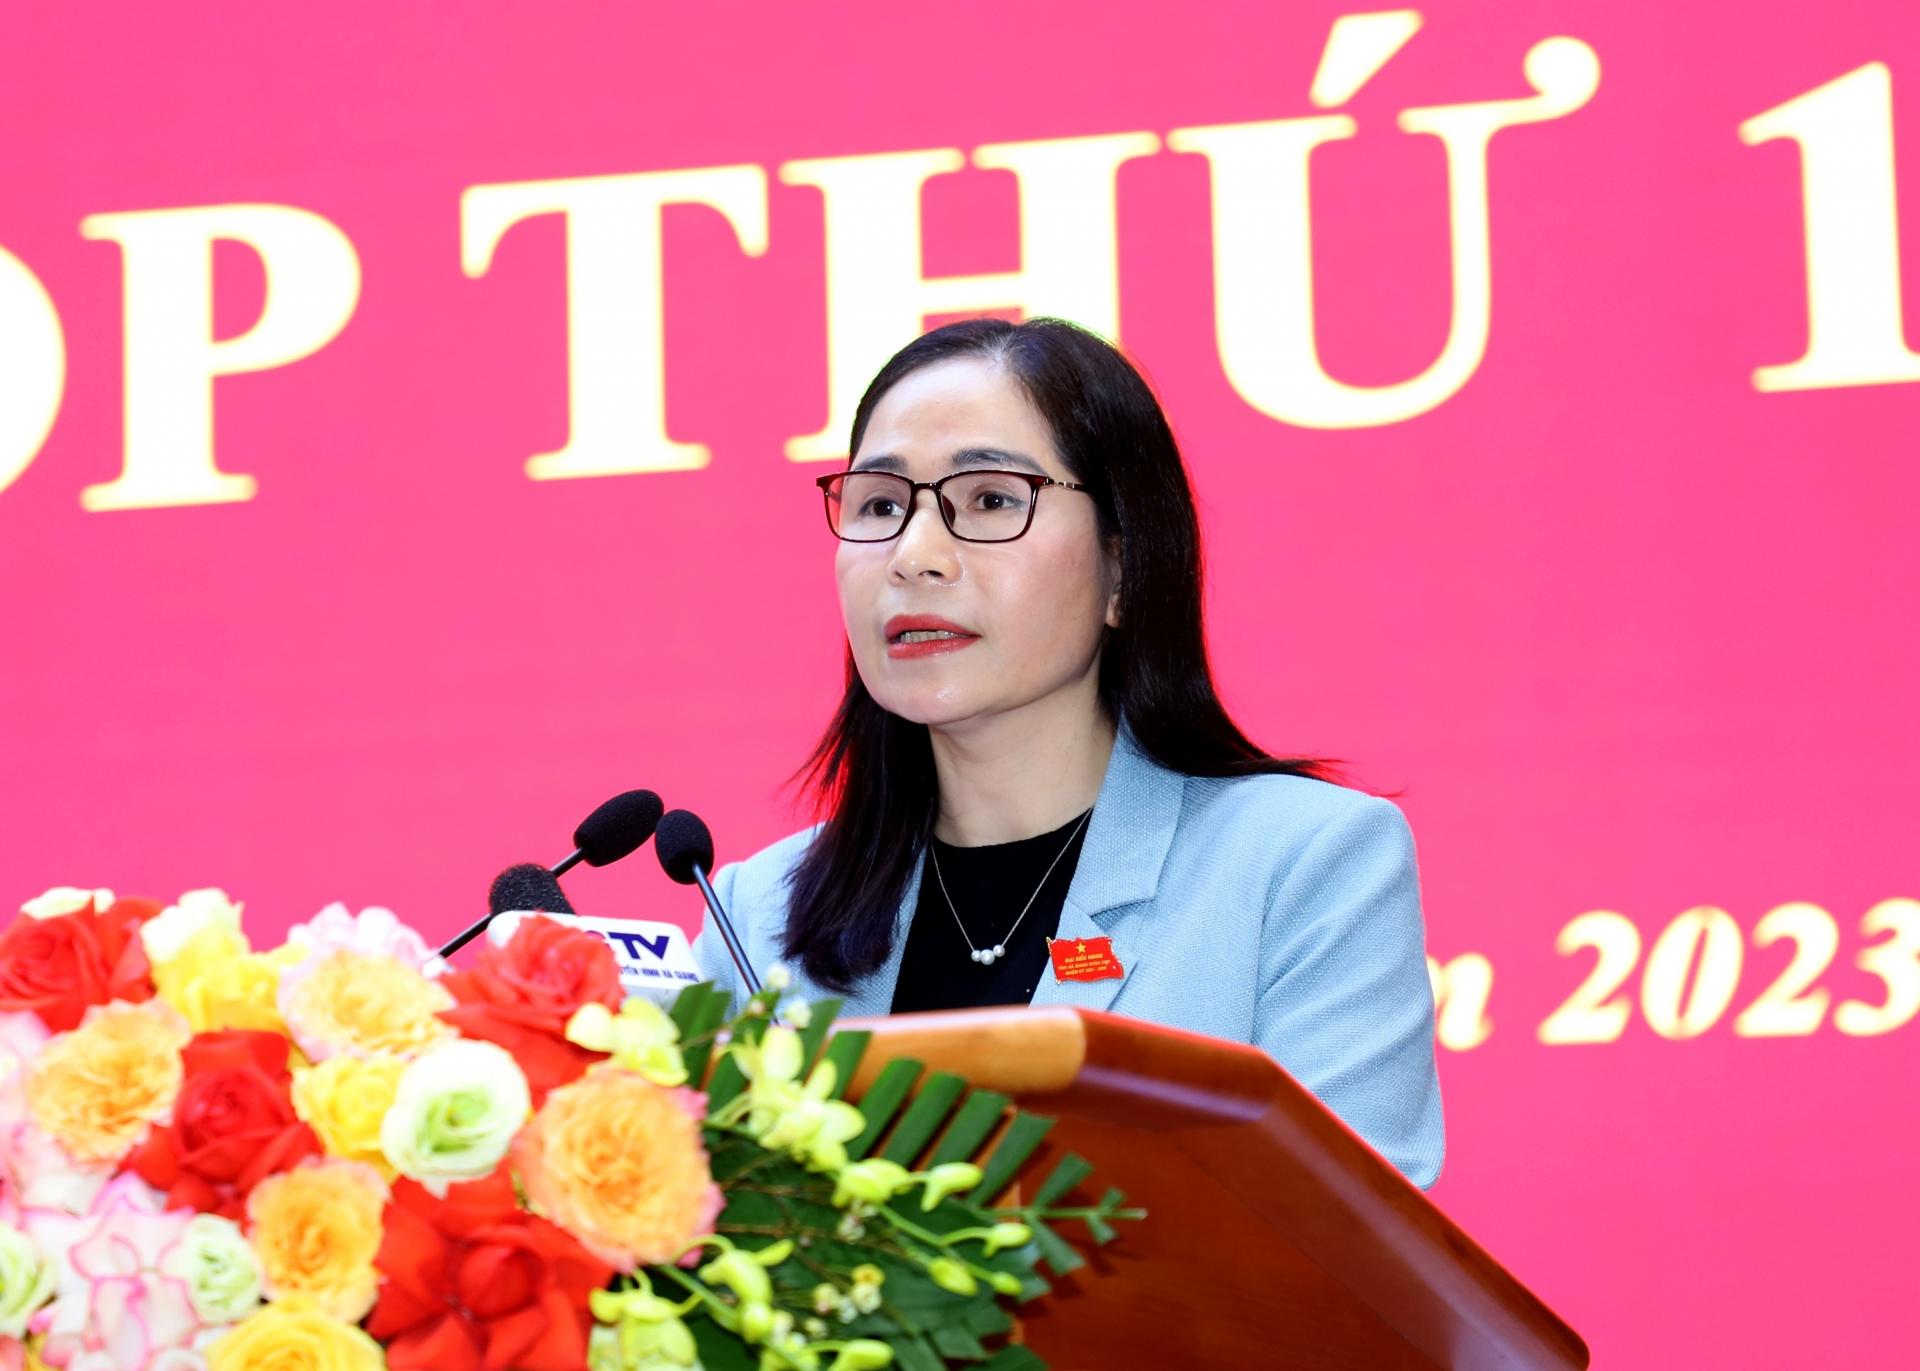 Trưởng Ban Kinh tế - Ngân sách HĐND tỉnh Phạm Thị Hồng Yên báo cáo thẩm tra đối với các văn bản trình kỳ họp thuộc lĩnh vực kinh tế - ngân sách.